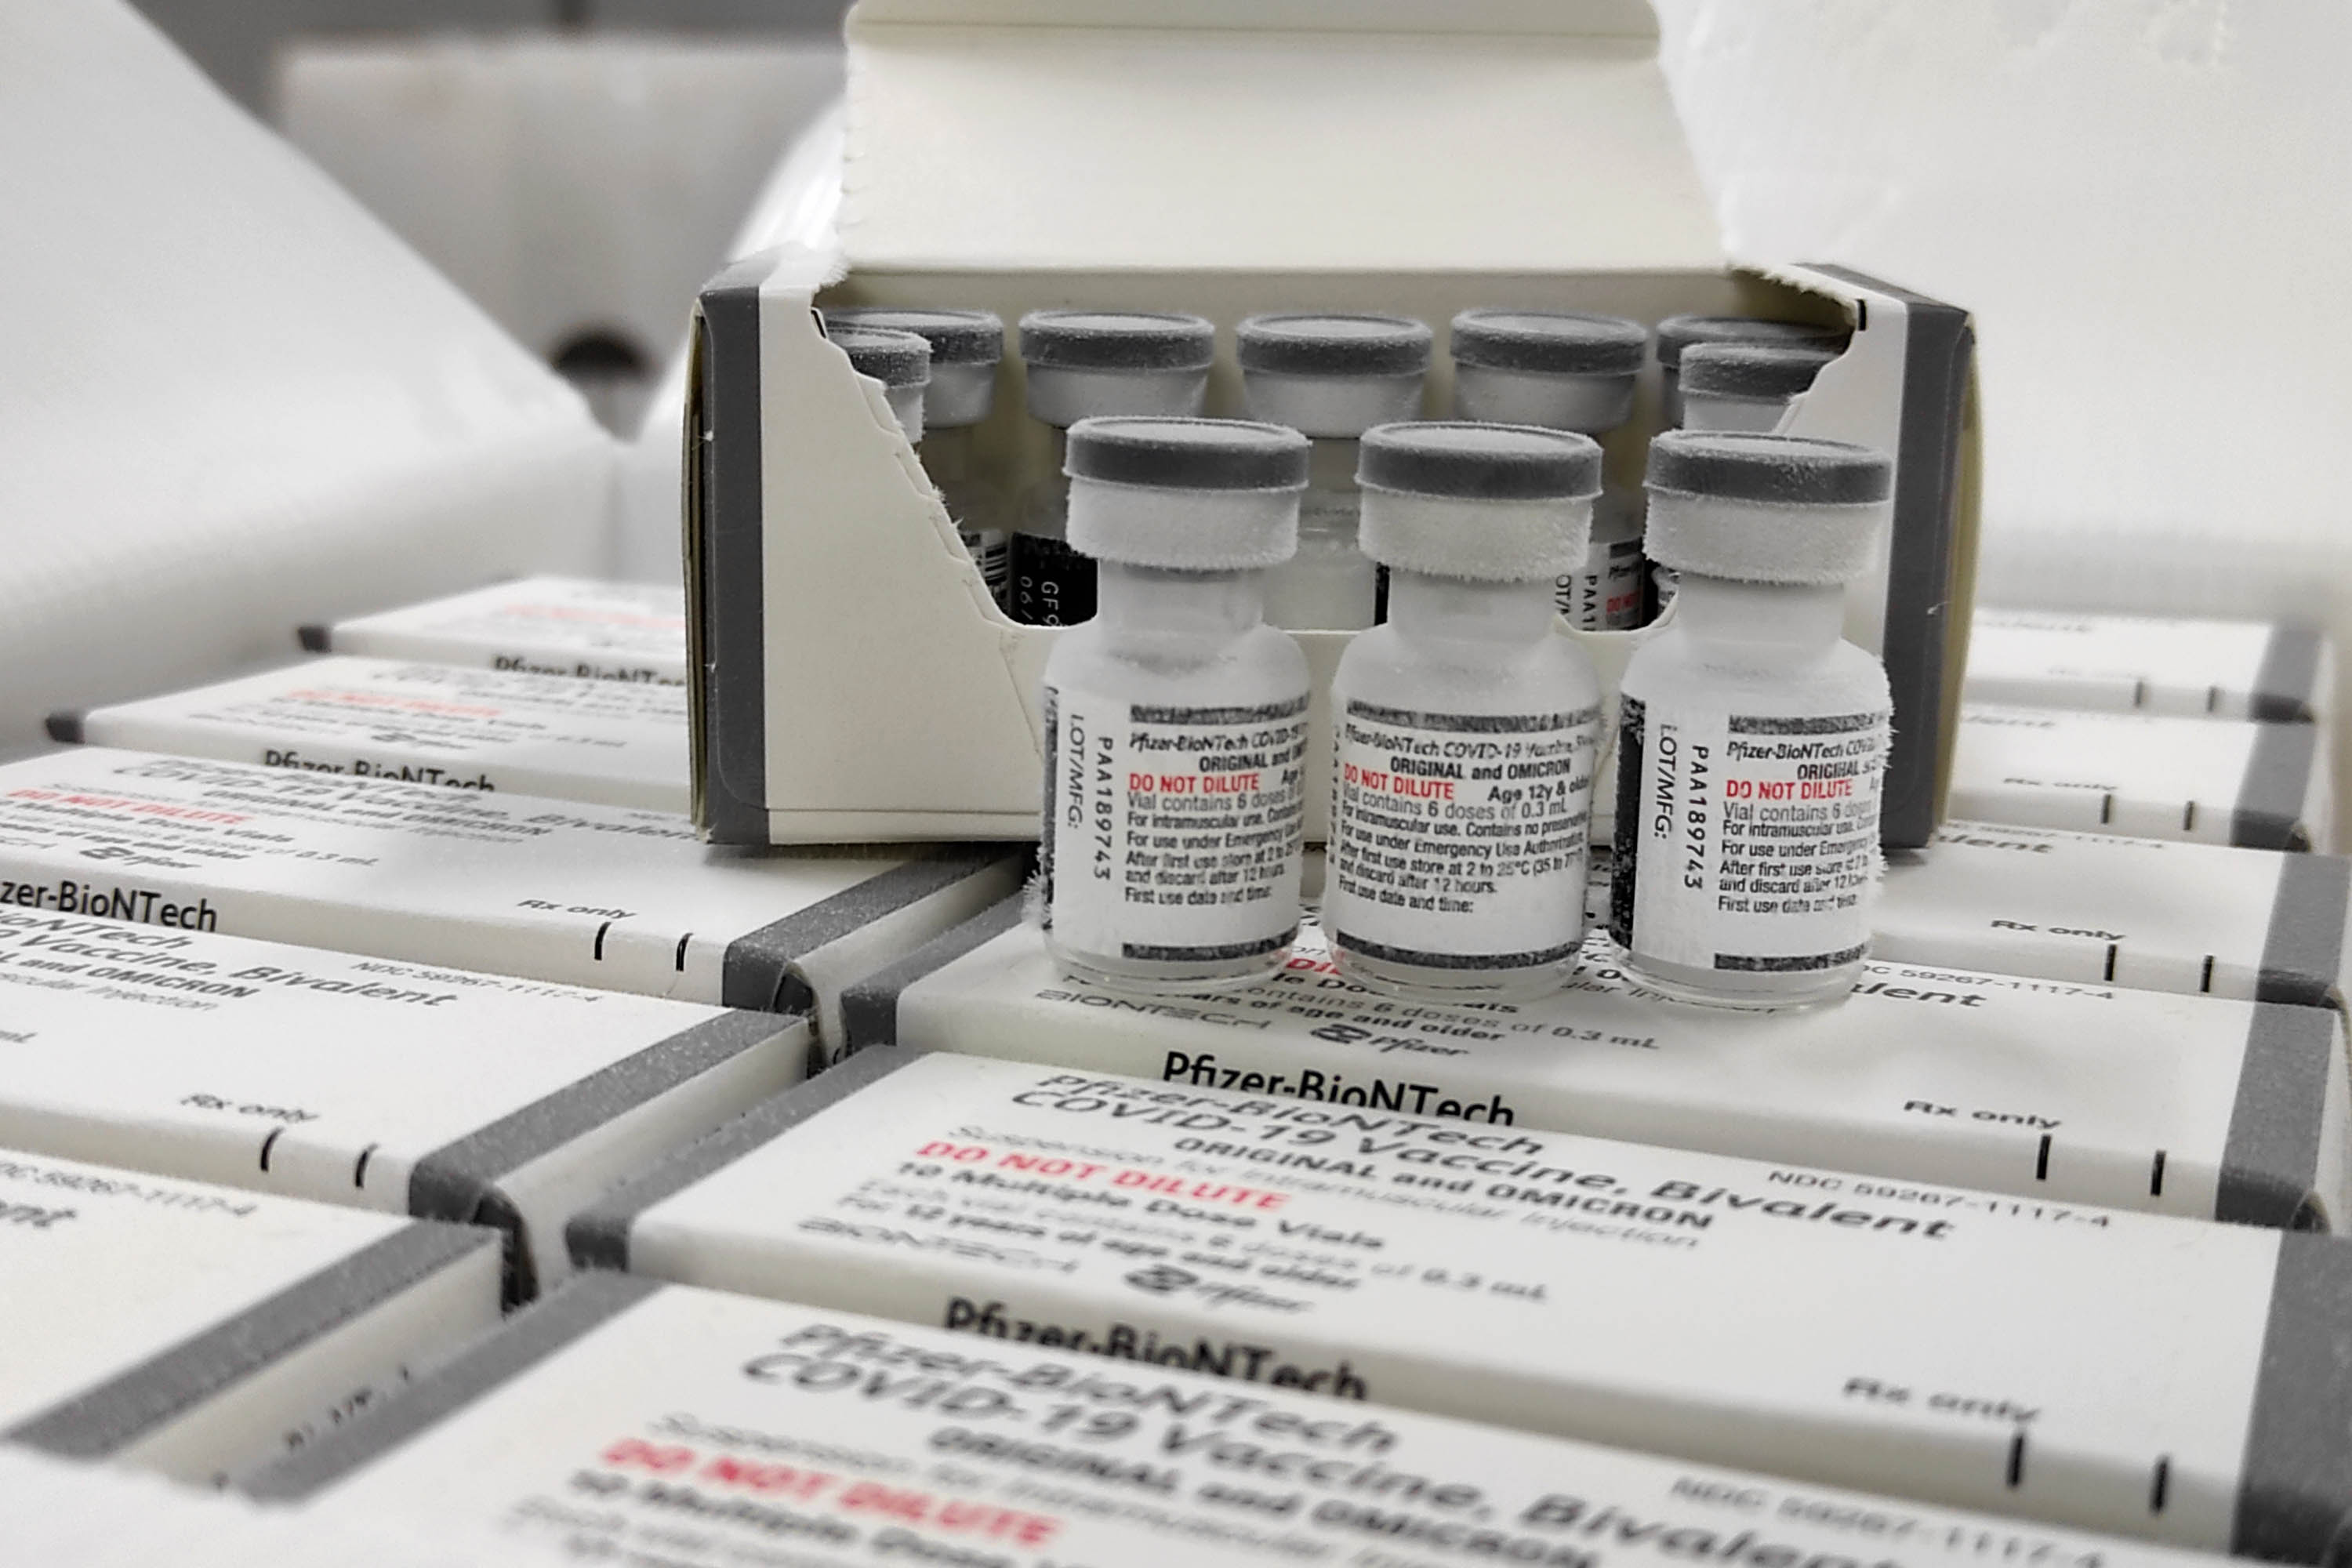 Doze municípios paraibanos ainda não aplicaram nenhuma dose da vacina bivalente contra covid-19